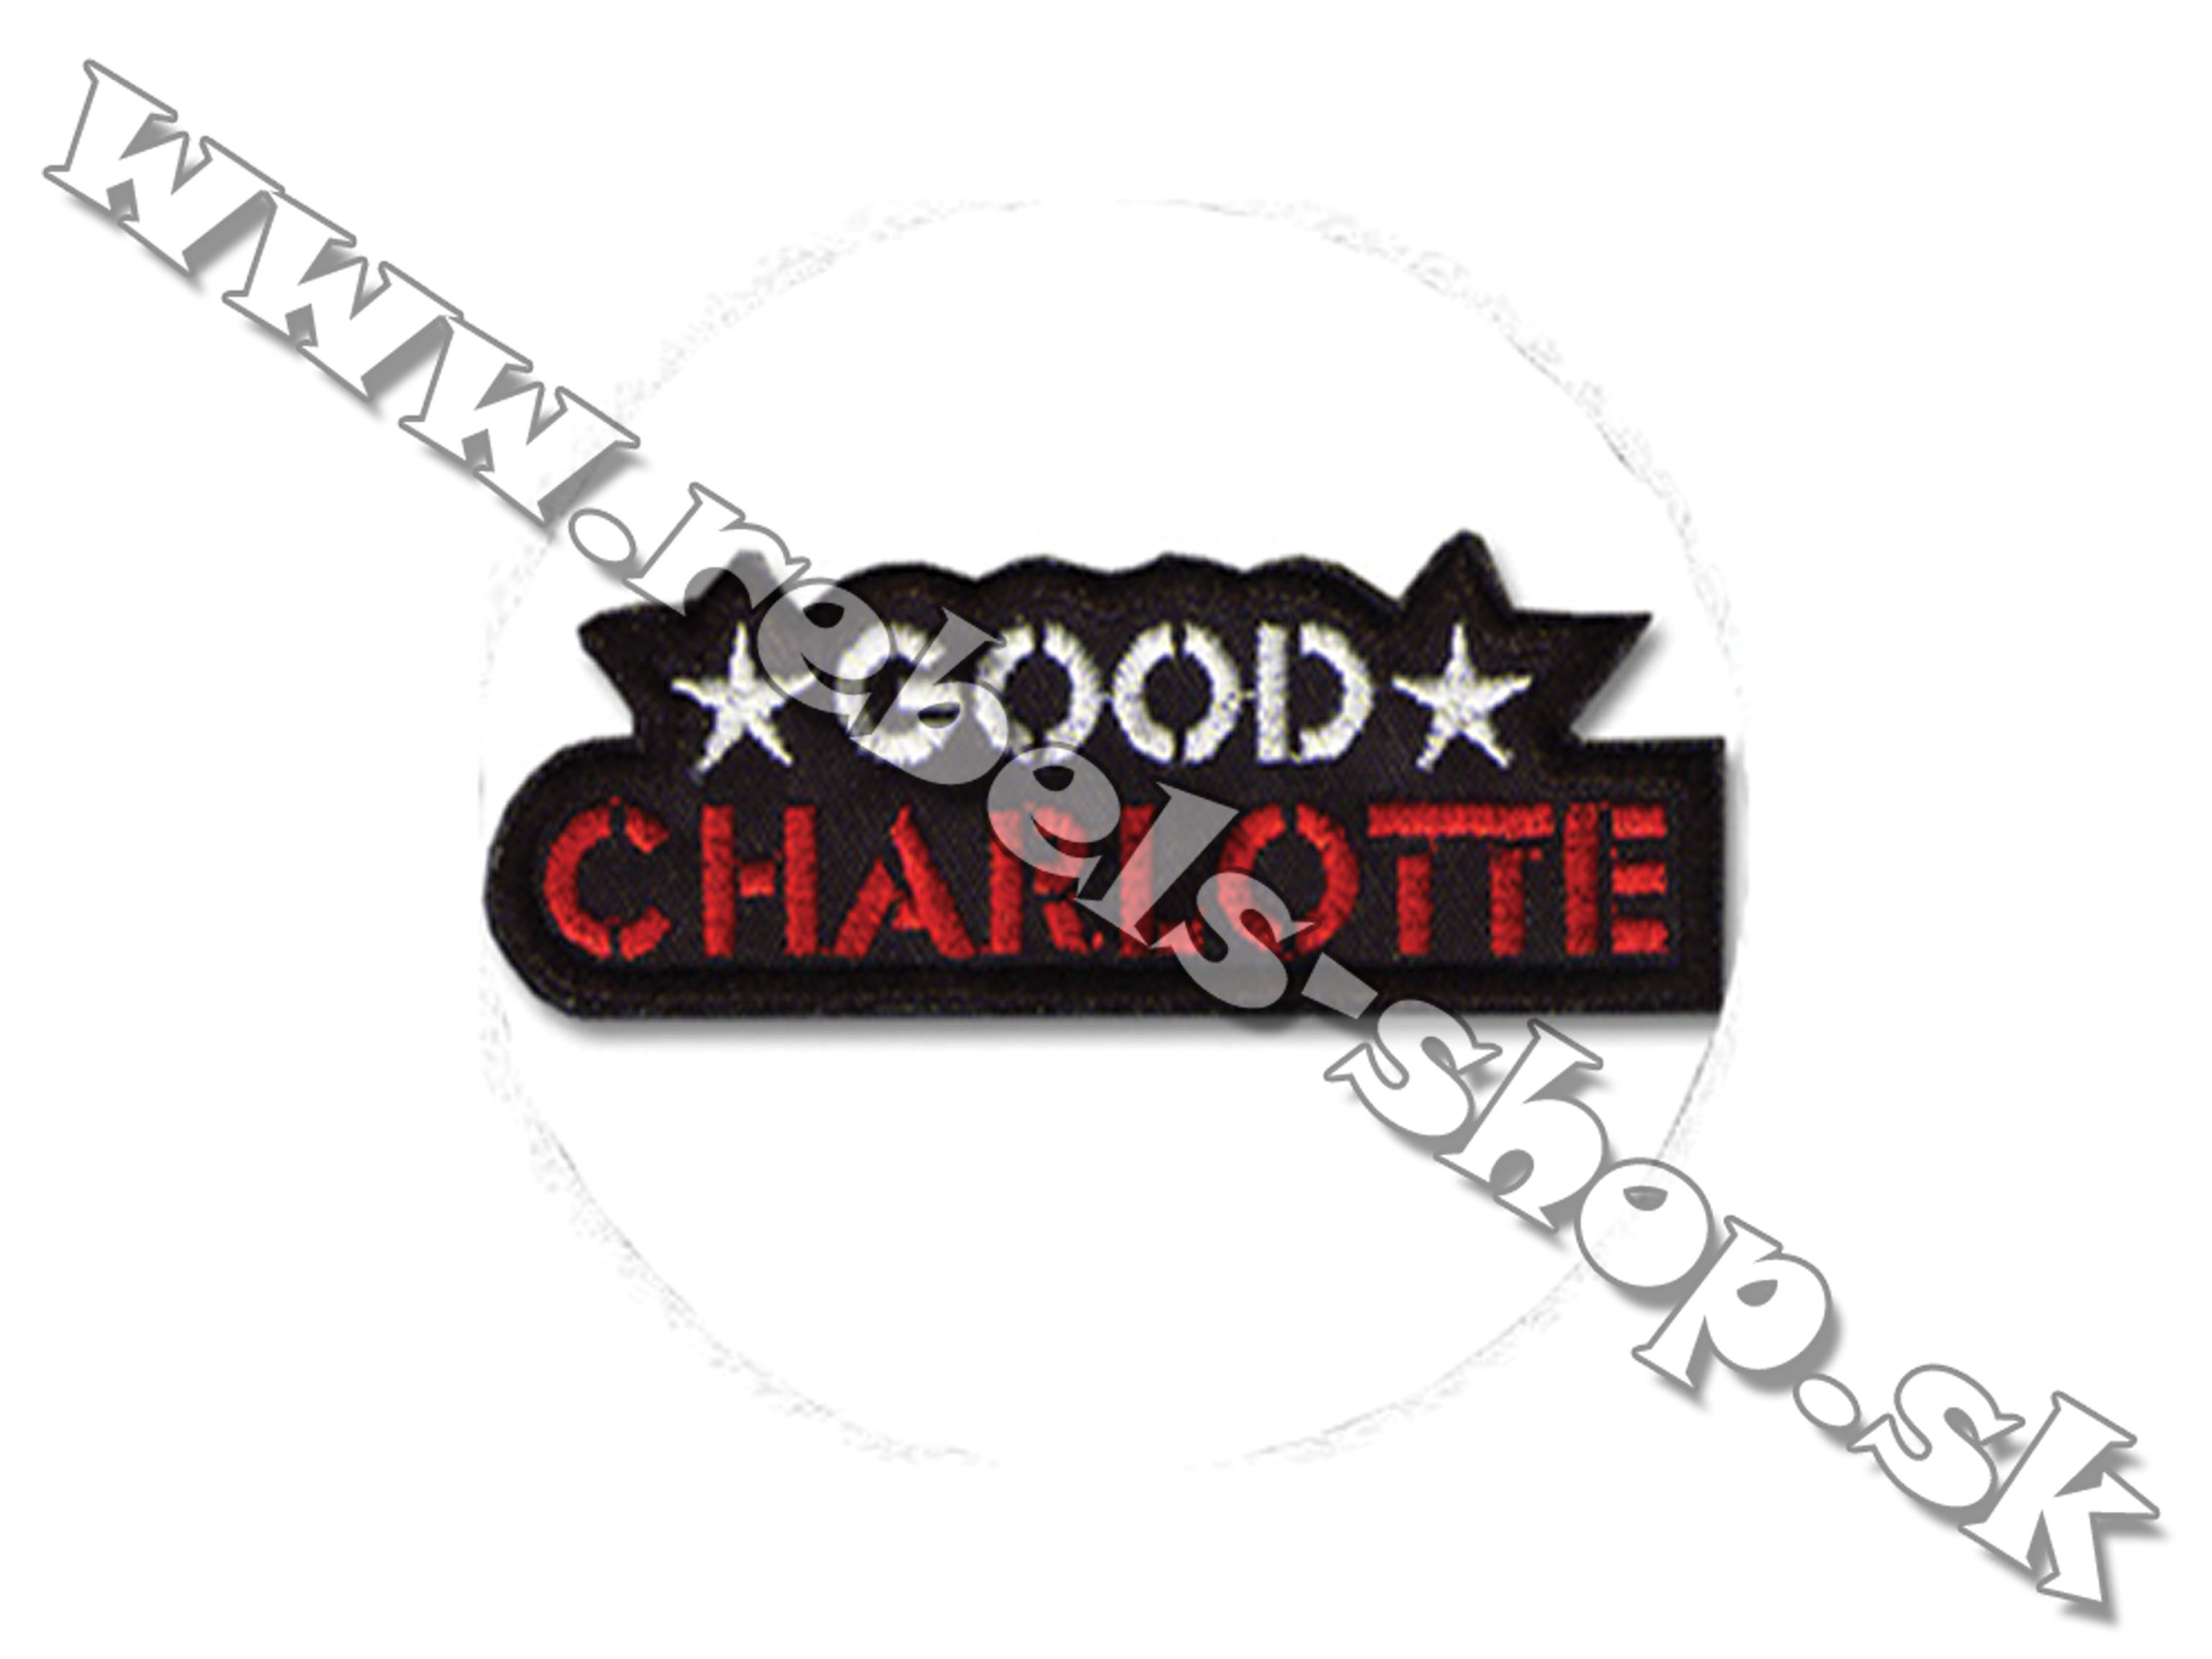 Odznak "Good Charlotte"